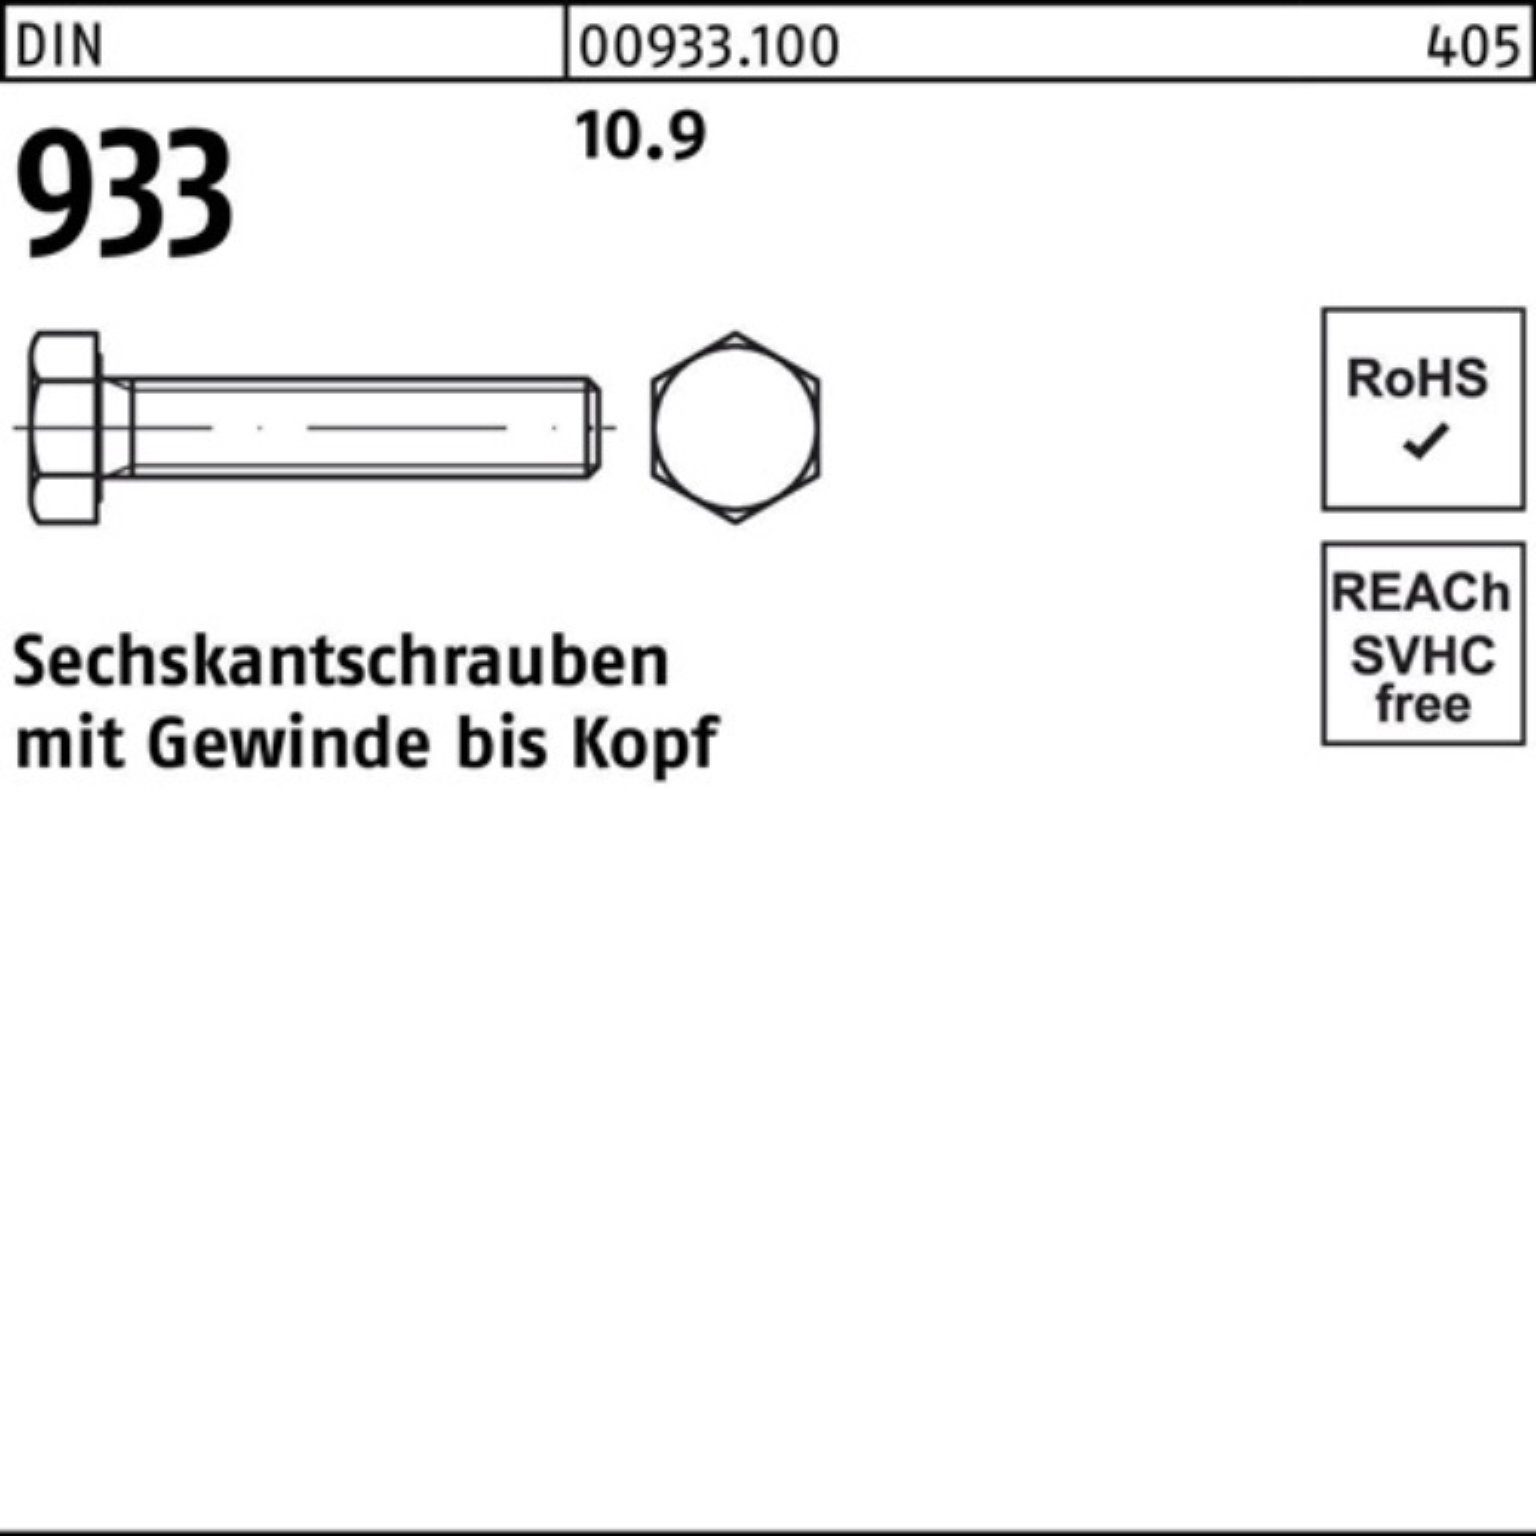 933 50 100er VG Sechskantschraube Reyher 10.9 DIN DIN Stück Pack 933 1 Sechskantschraube M36x